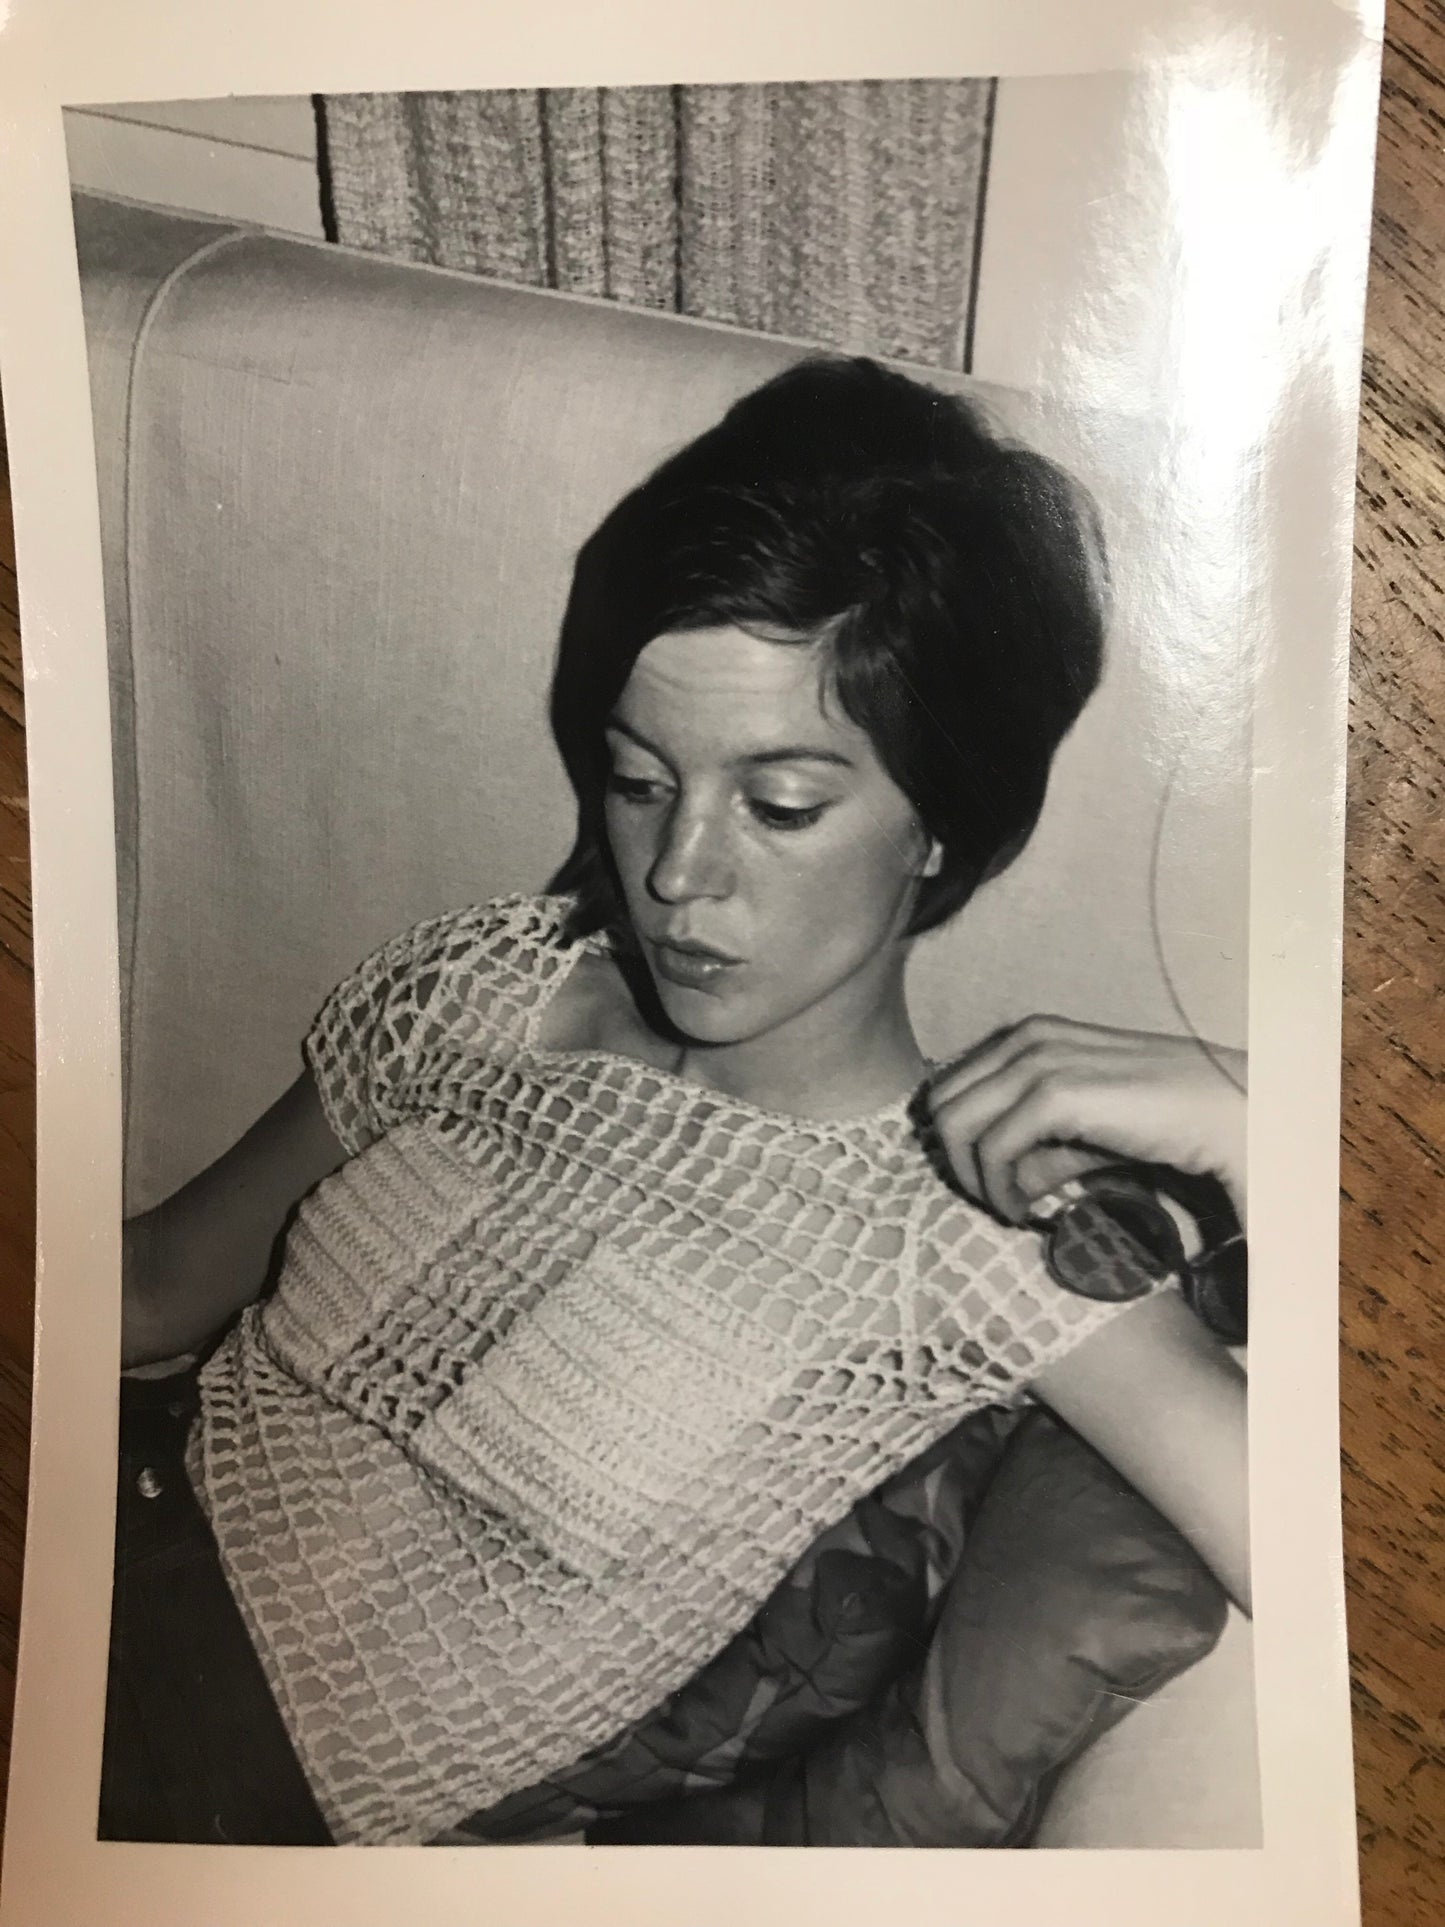 Rare 1960s Mod Mesh Mini Dress / Top